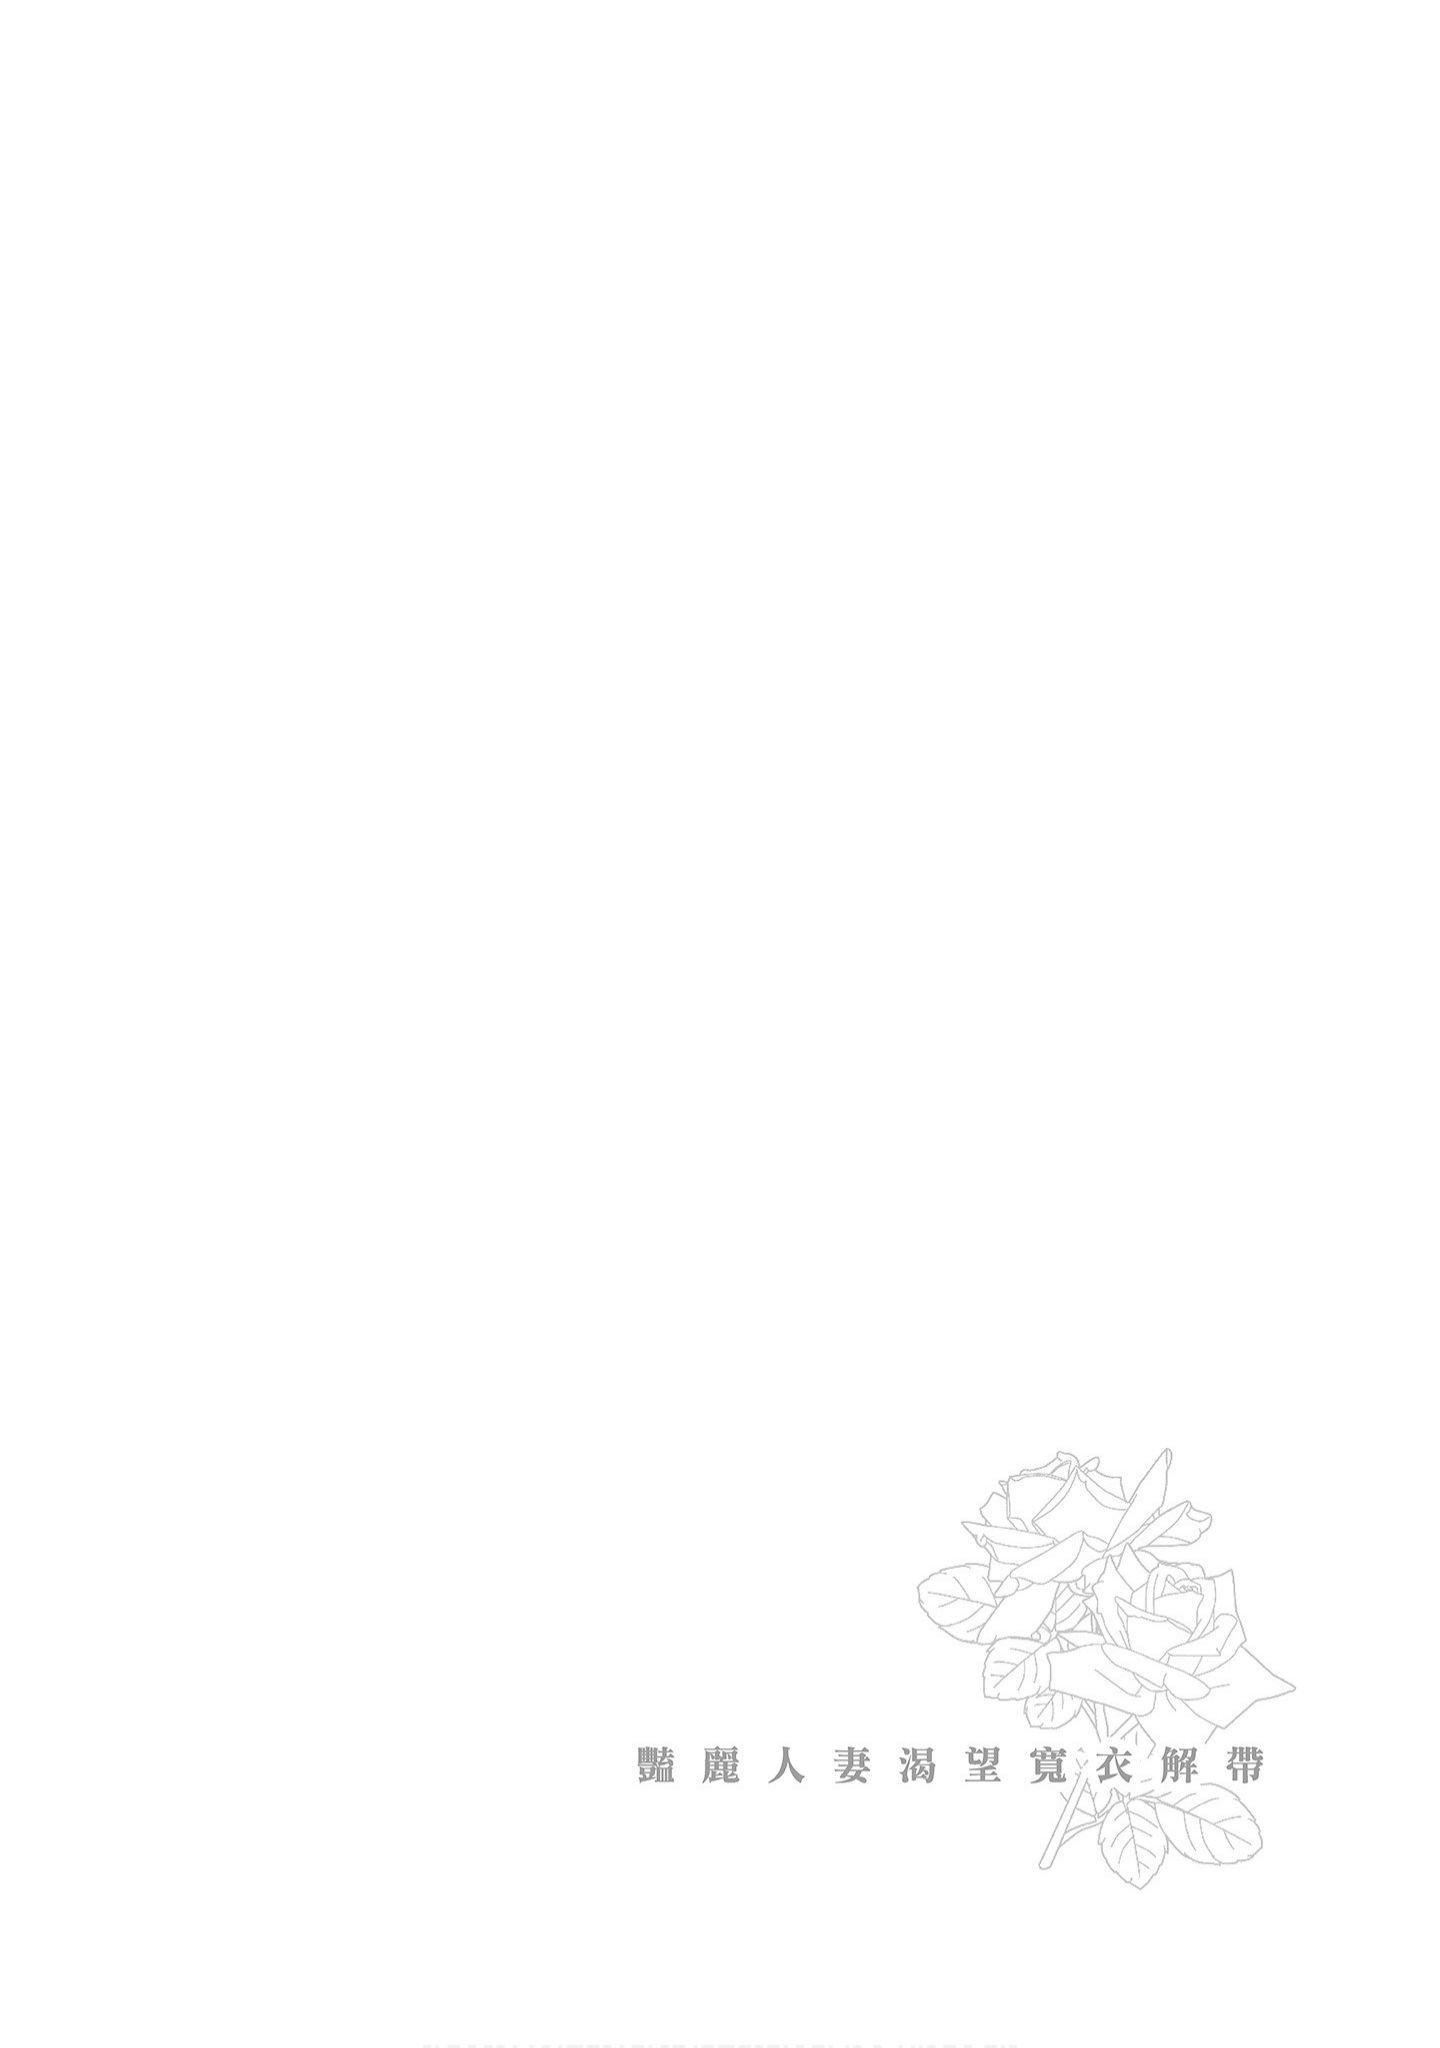 [紳士漫畫掃圖組][東タイラ]豔麗人妻渴望寬衣解帶[全]107.jpg